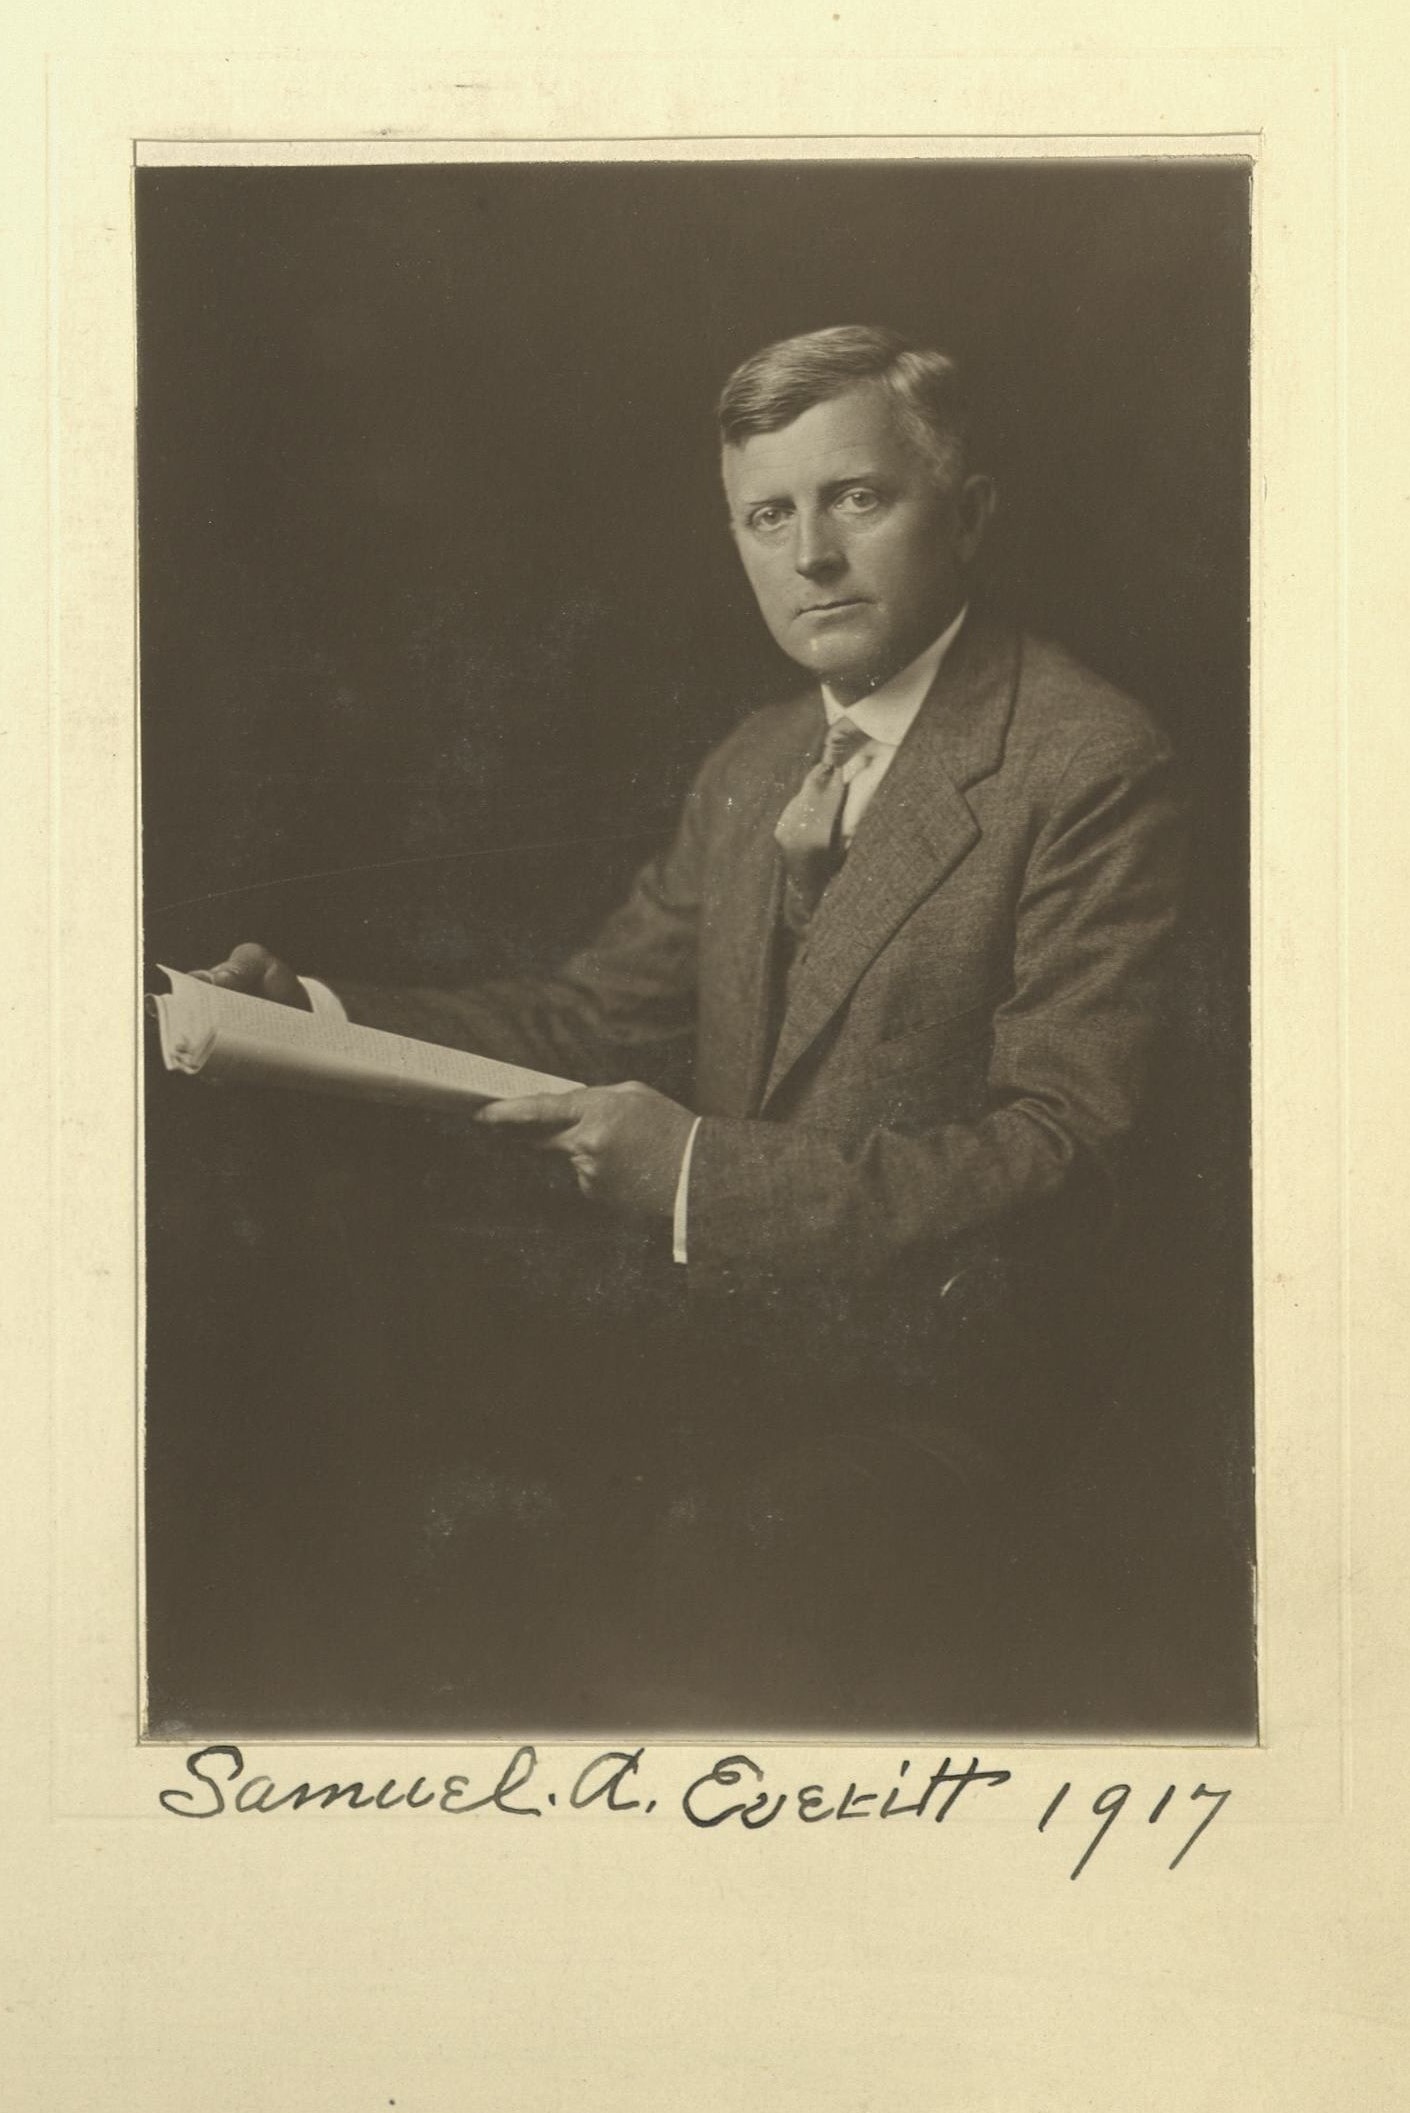 Member portrait of Samuel A. Everitt